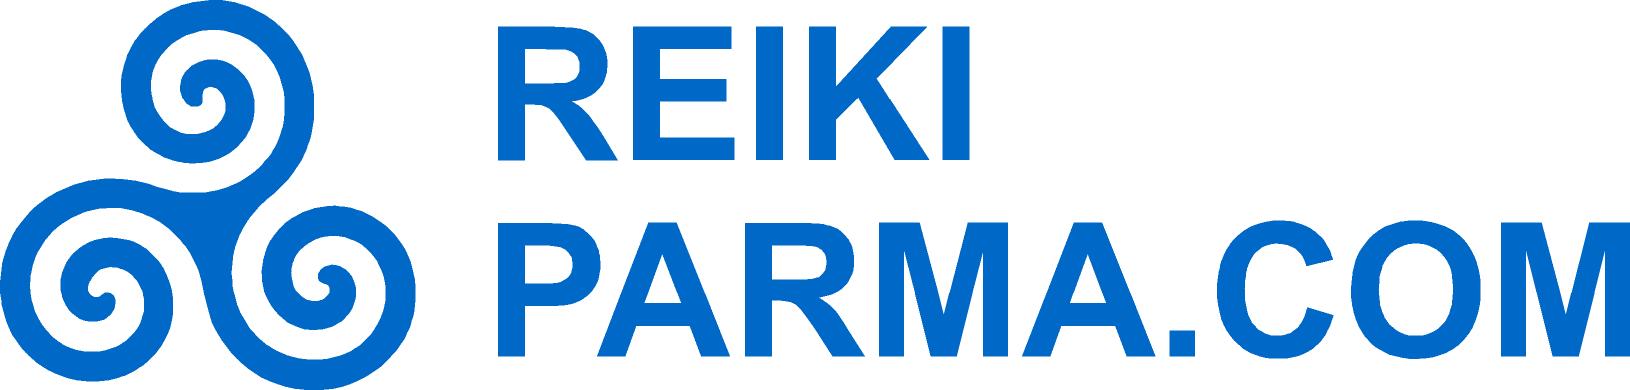 REIKI PARMA.COM